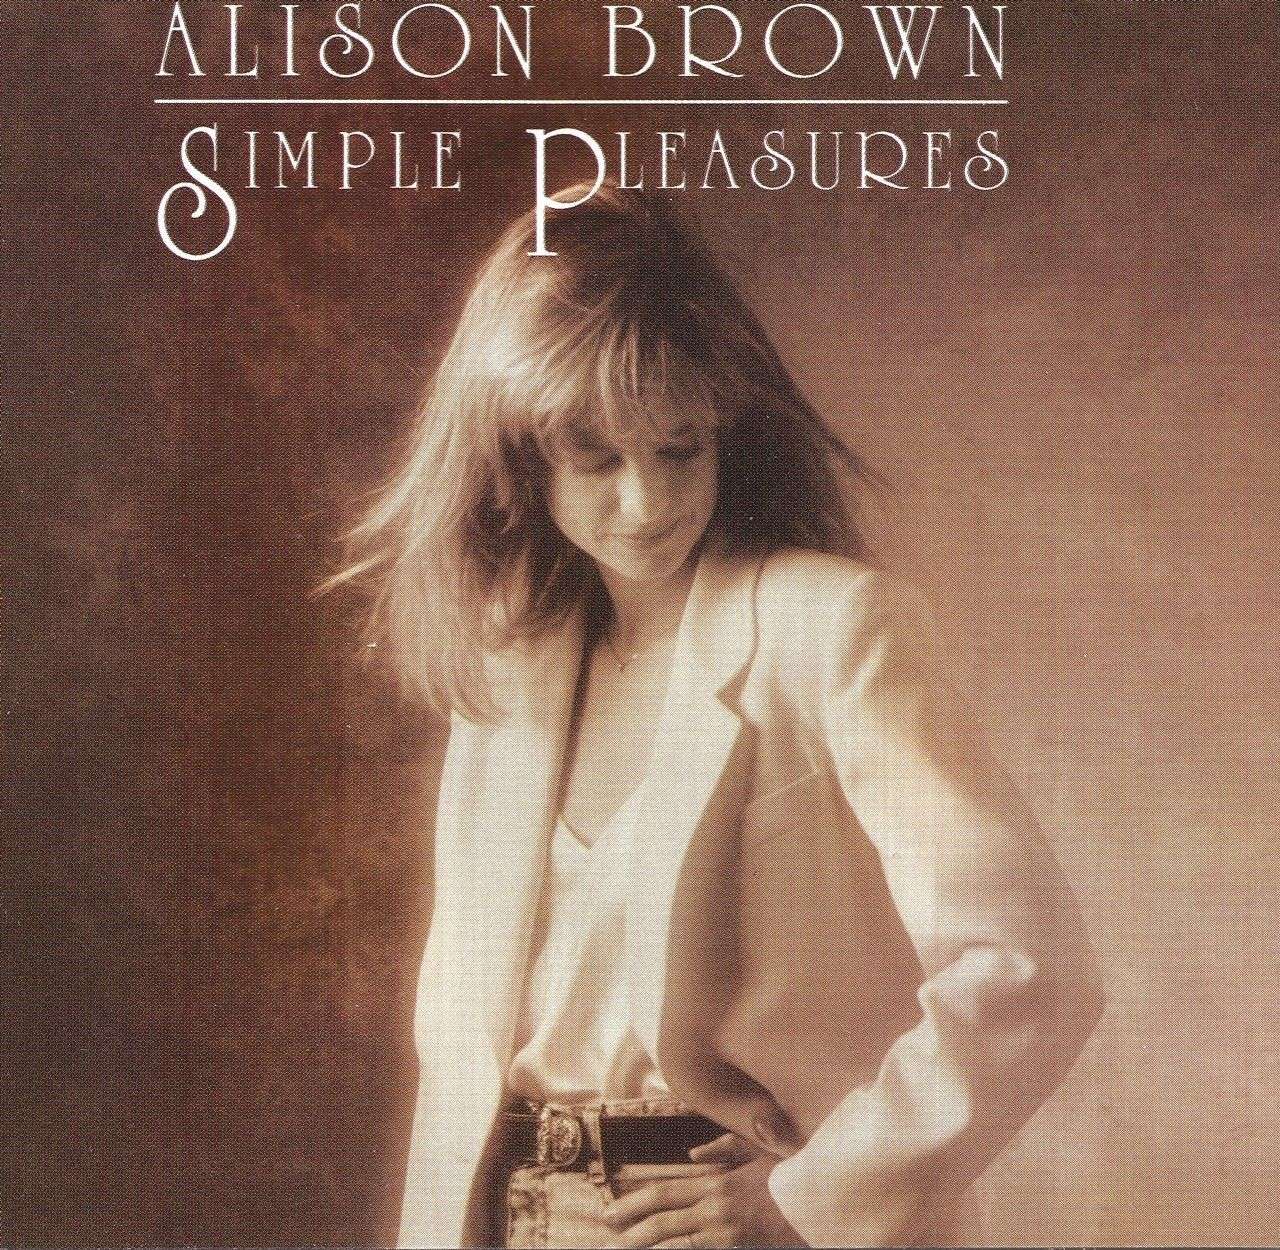 Alison Brown- Simple Pleasures cover album